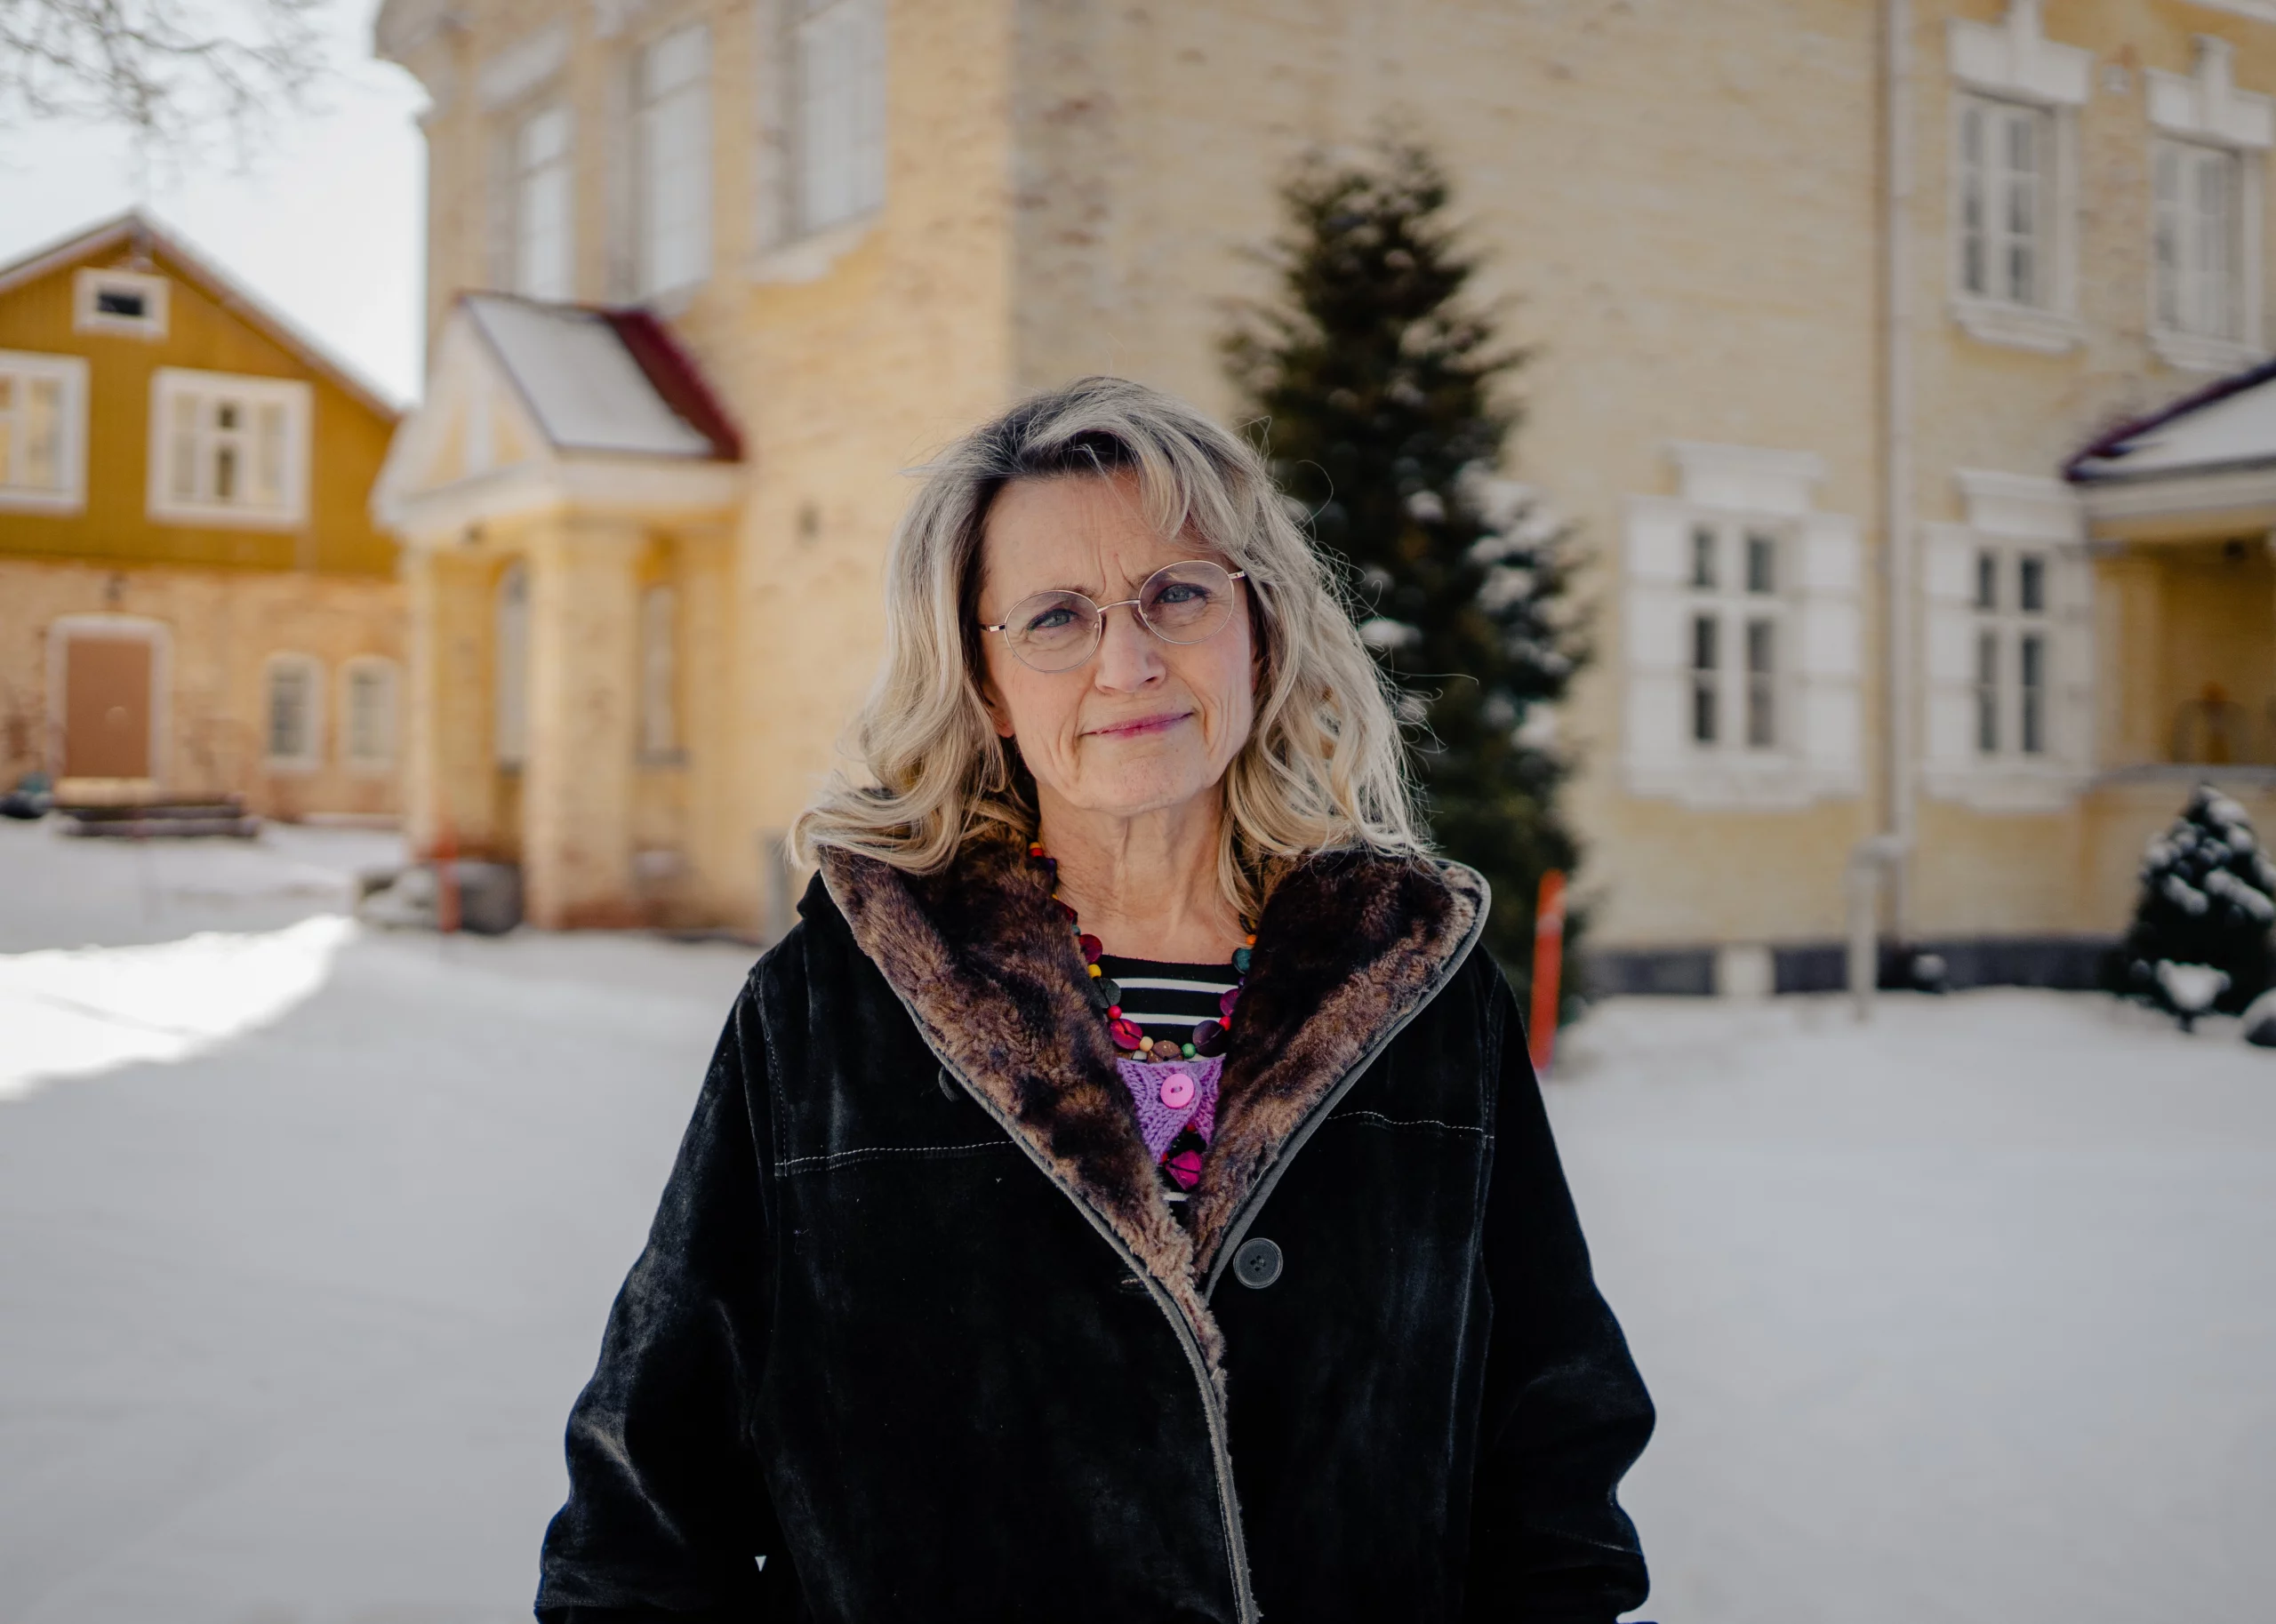 Au lieu de fêter le premier anniversaire de son acquittement, Päivi Räsänen est contrainte à défendre à nouveau sa liberté d’expression pendant un deuxième procès